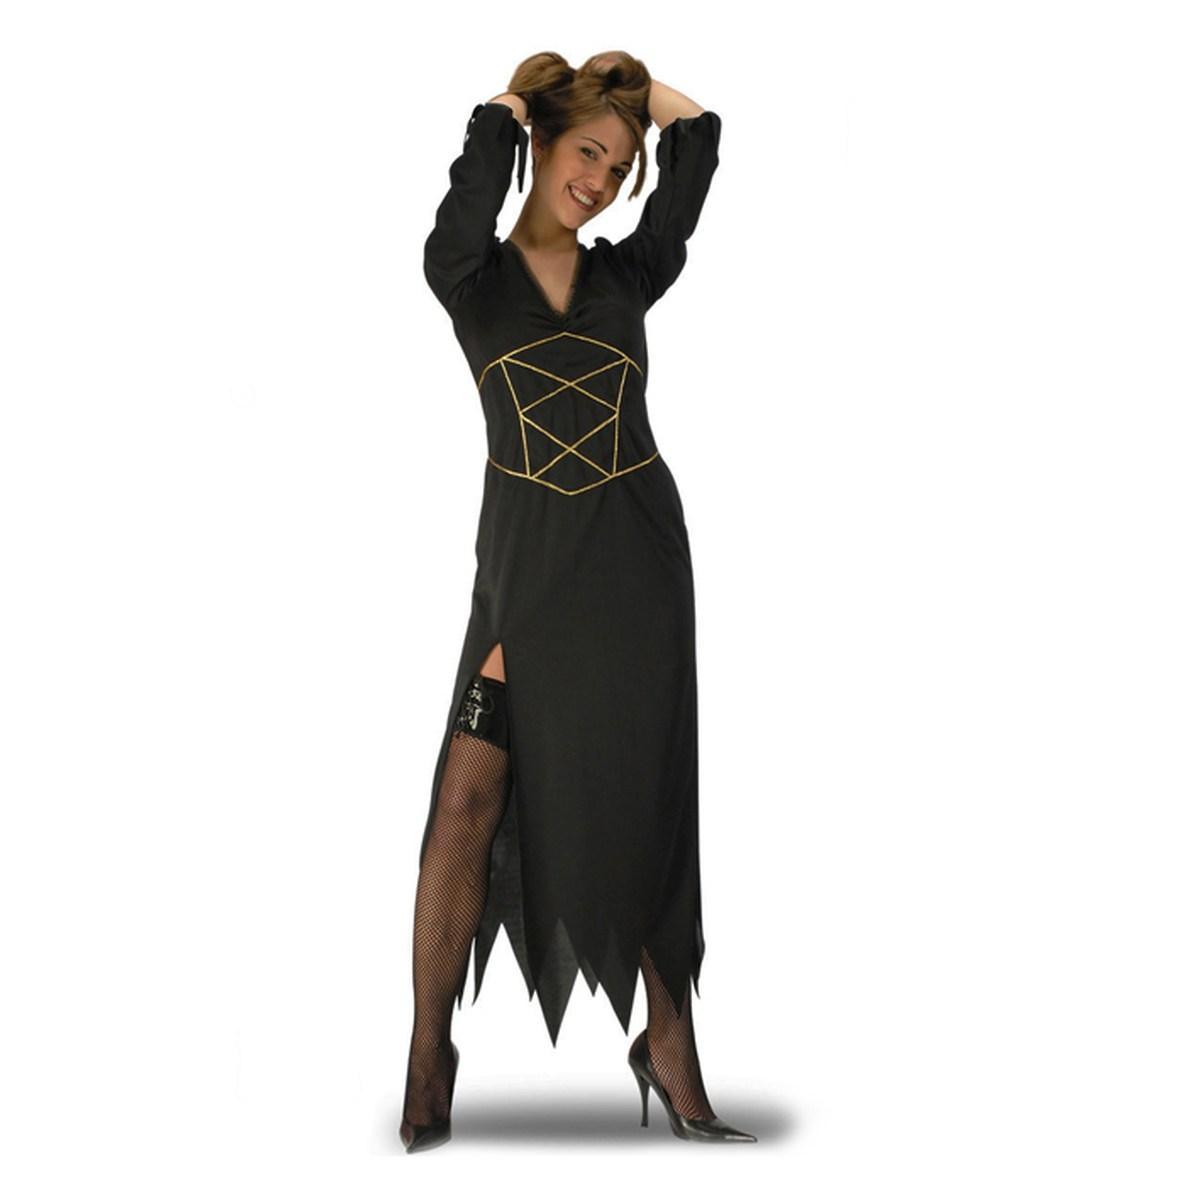 Vestito da Vampira Donna per Halloween - Eleganza Oscura e Fascino